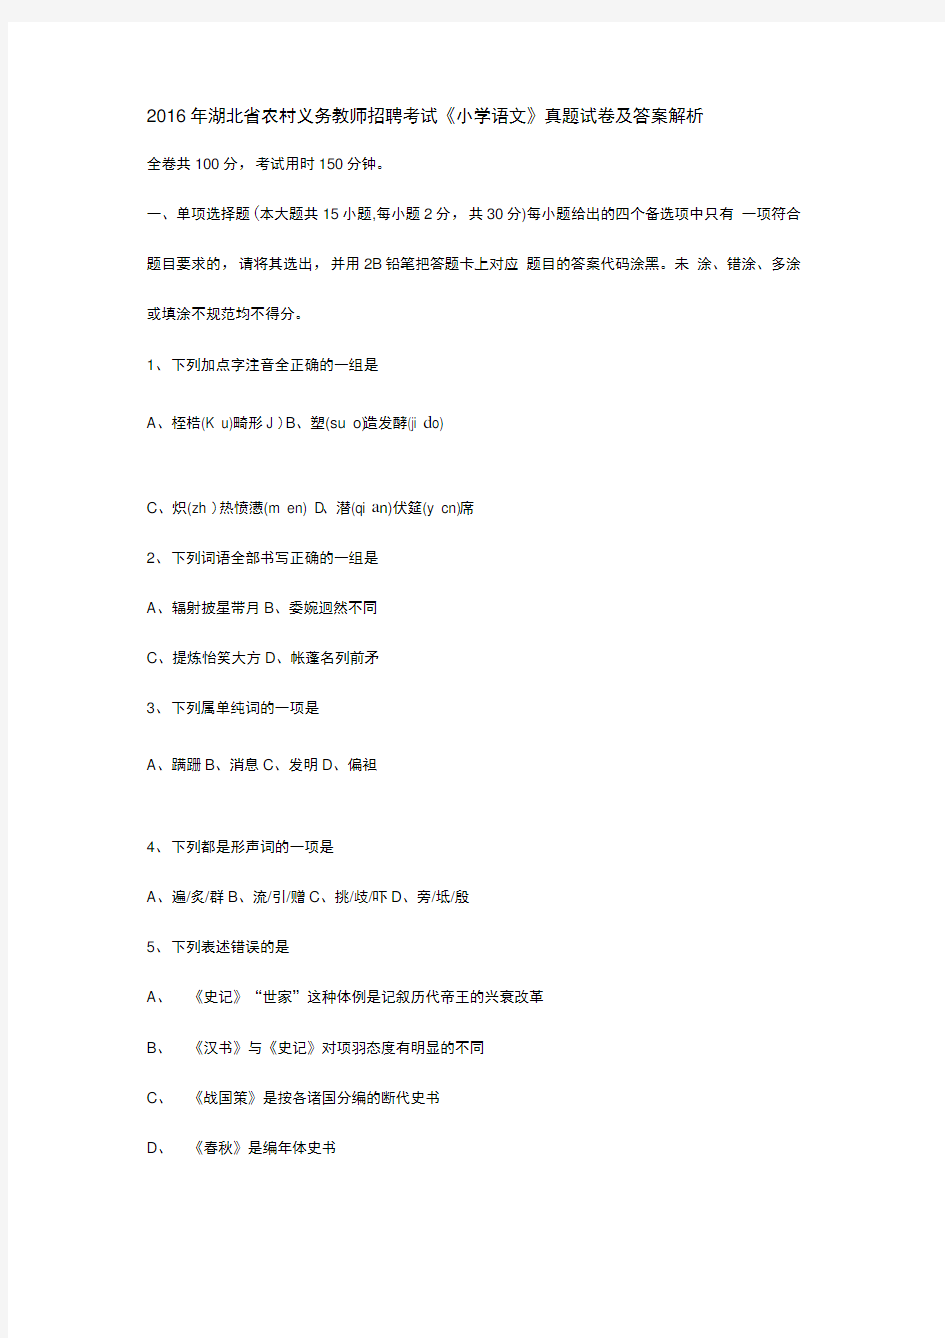 2016年湖北省农村义务教师招聘考试小学语文真题试卷及答案解析